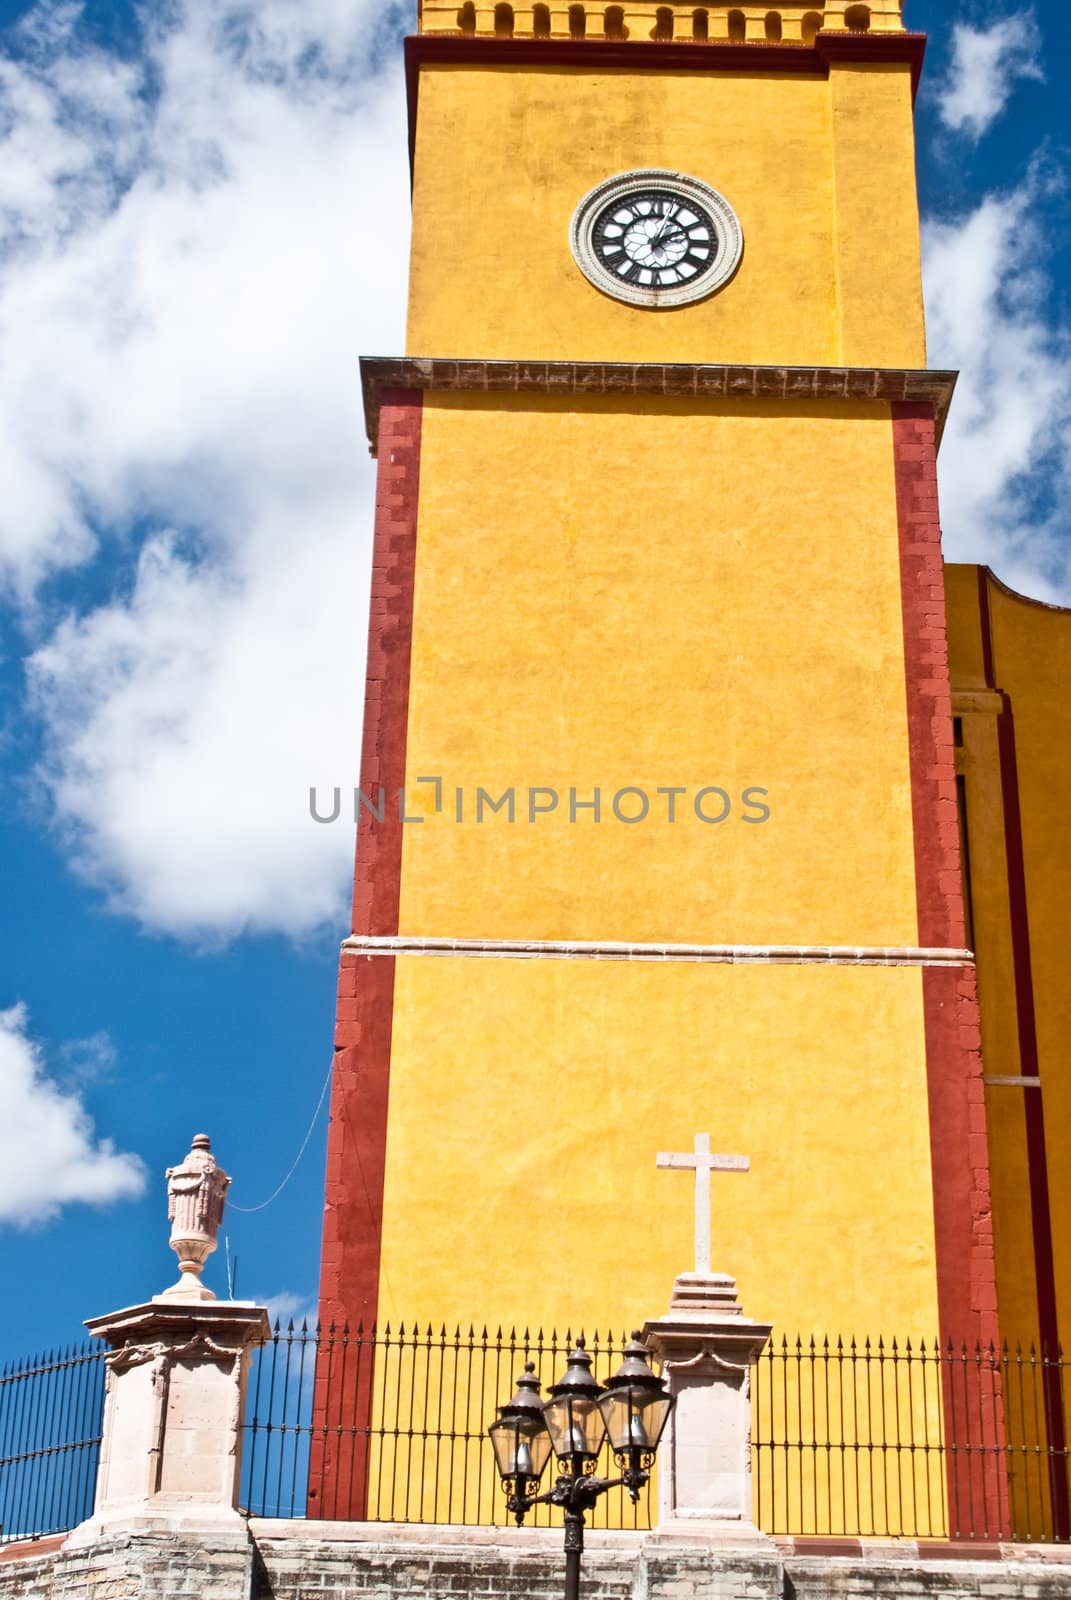 Vibrant yellow clock tower in Guanajuato, Mexico